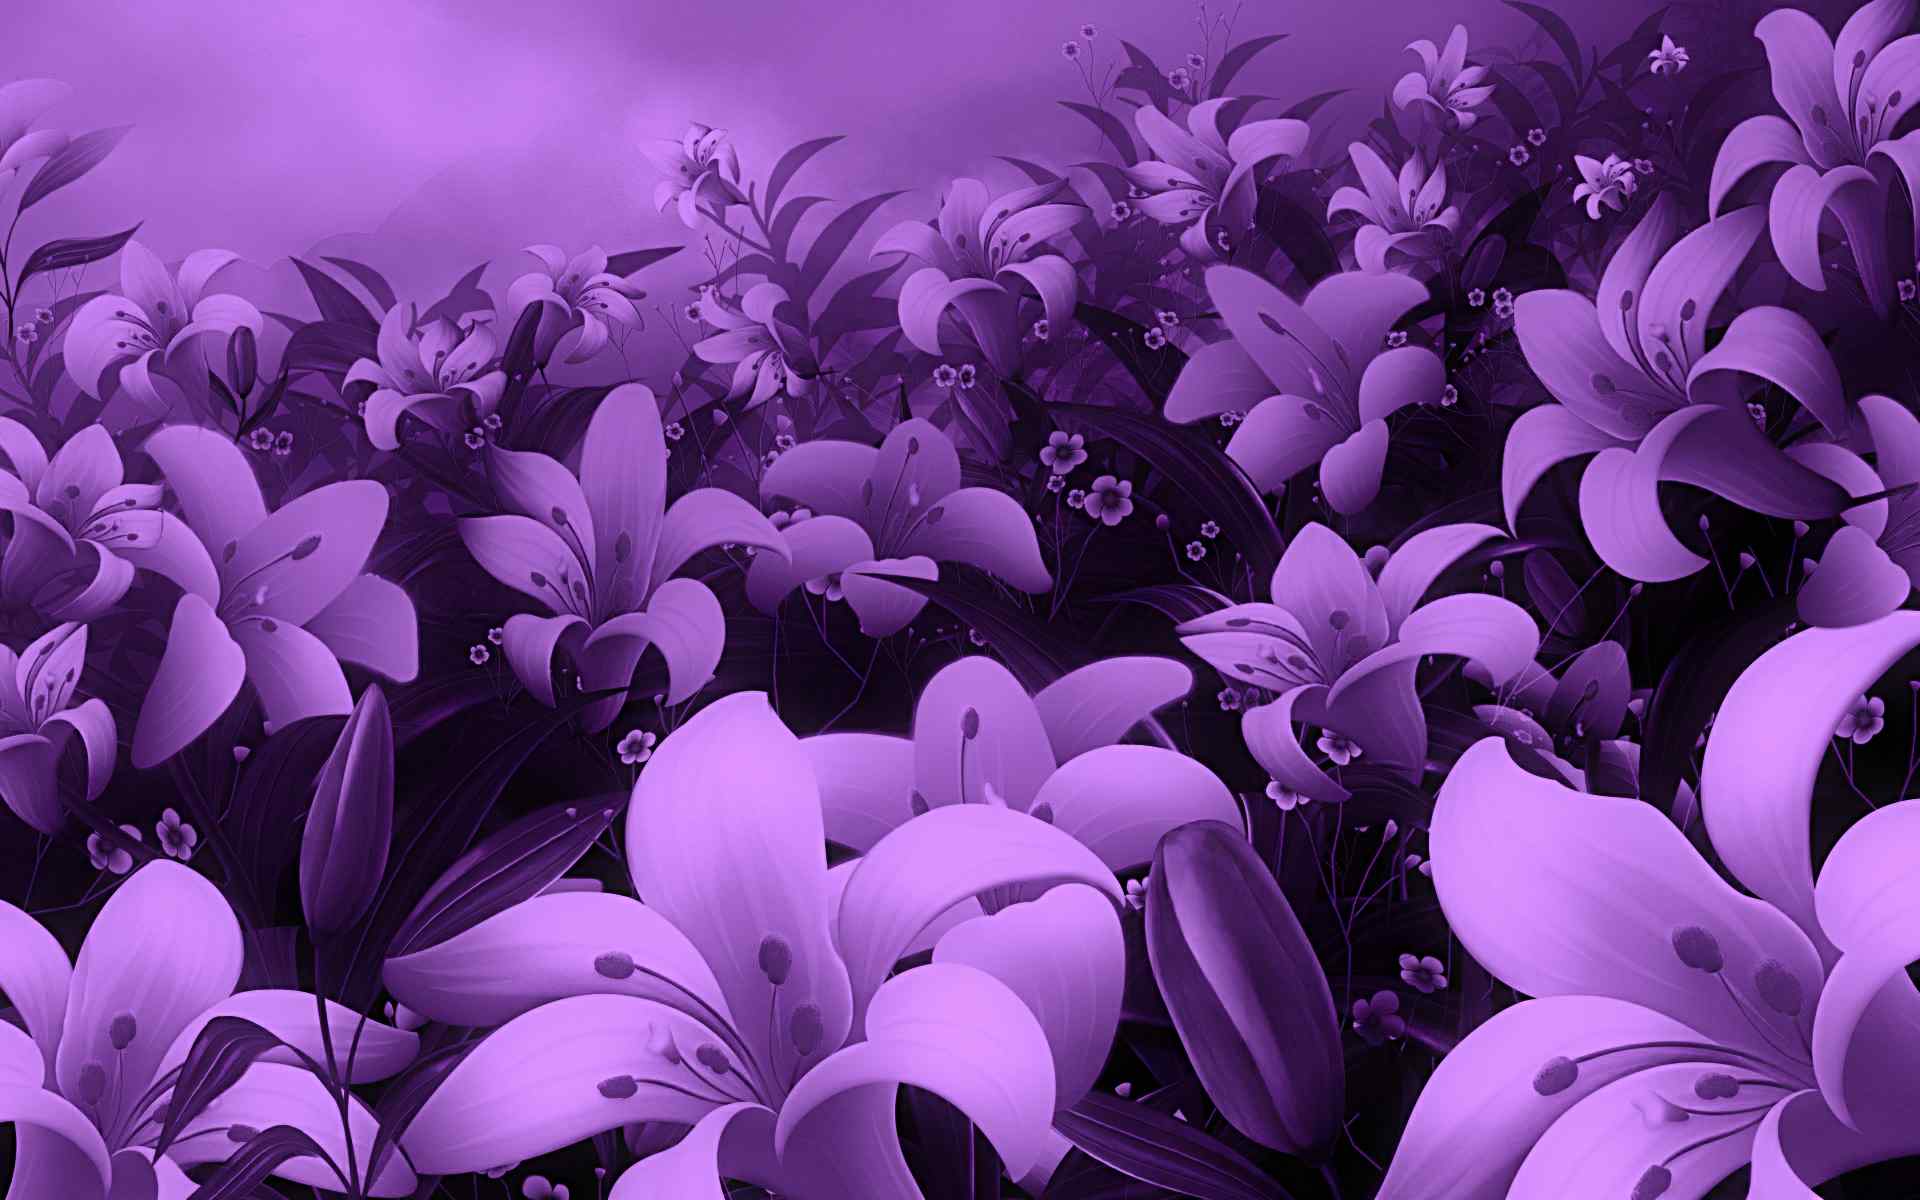 紫色百合壁纸